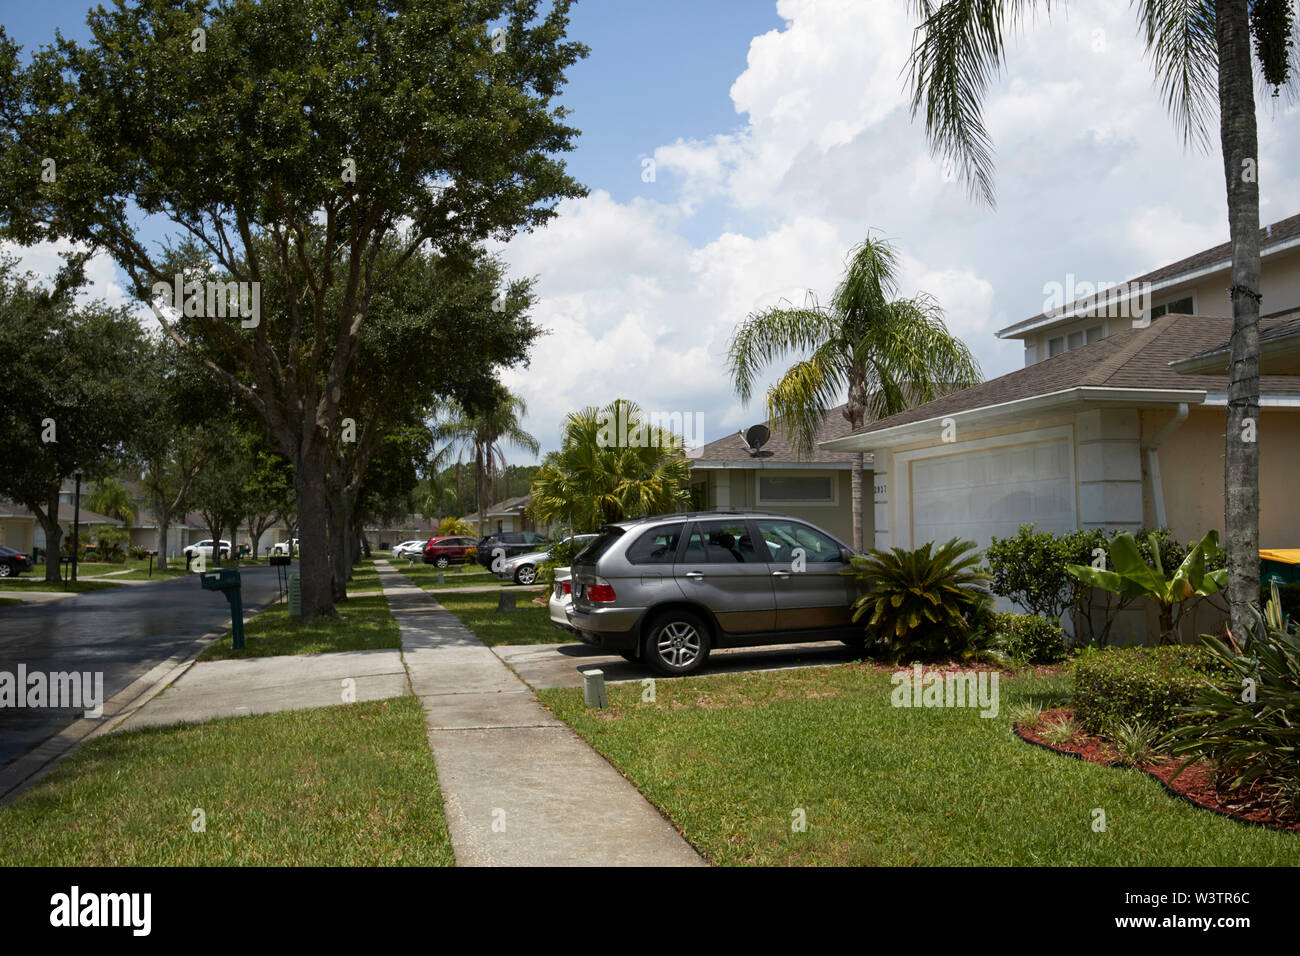 Sonne auf konkrete Fußweg Bürgersteig durch gated community in kissimmee Florida nach Mitte Nachmittag Regendusche USA Vereinigte Staaten von Amerika Stockfoto